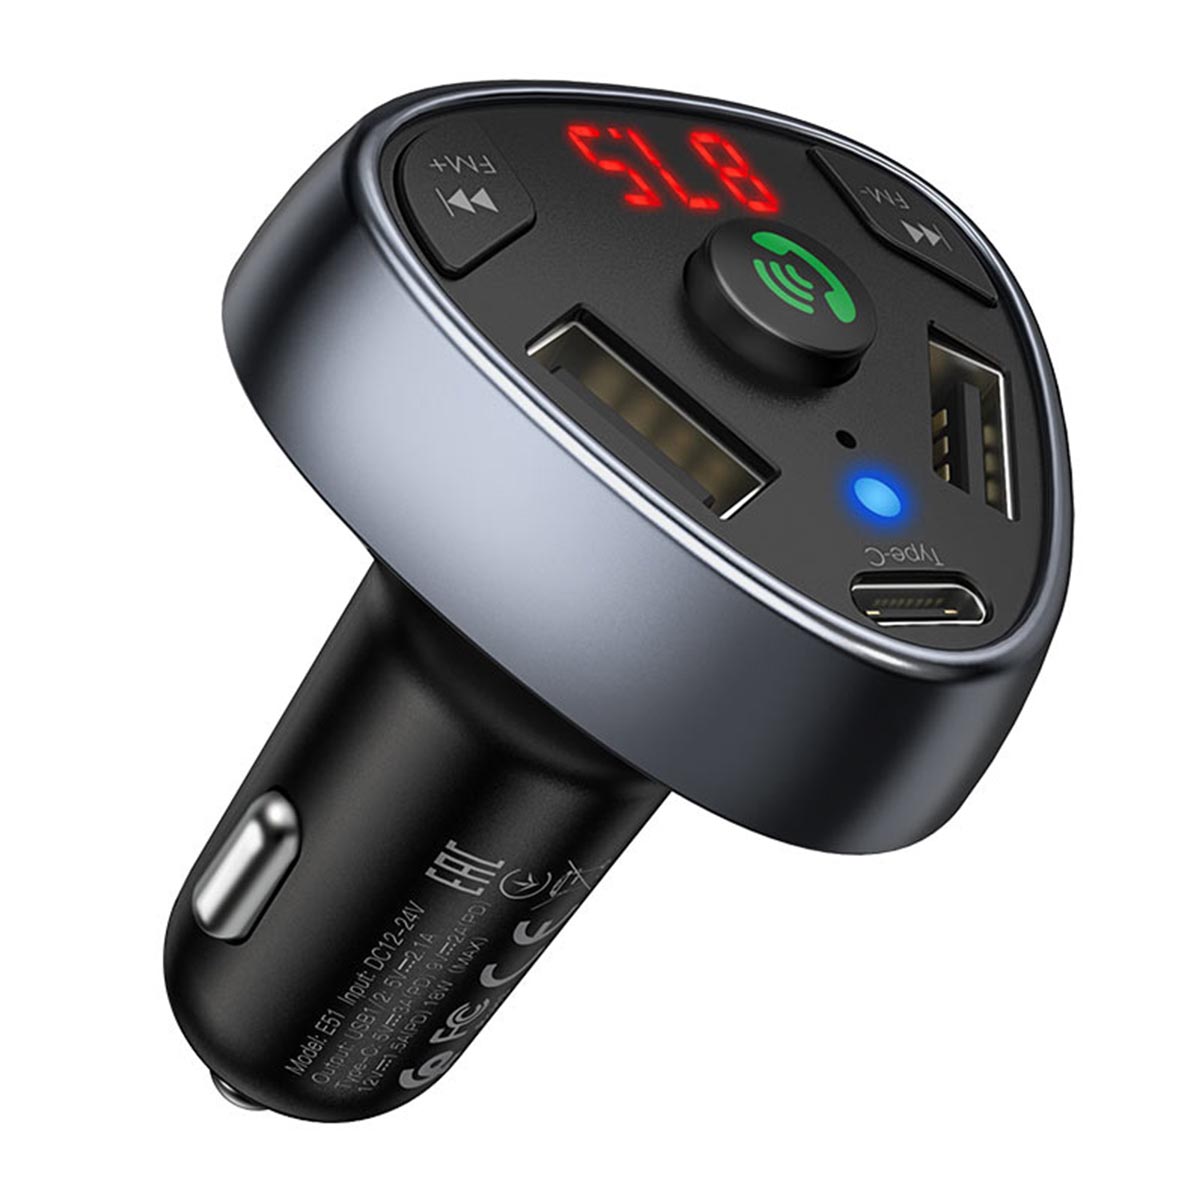 АЗУ (Автомобильное зарядное устройство) HOCO E51 Road treasure с FM-трансмиттером, 3.1A, 2 USB, 1 USB Type C, цвет черный